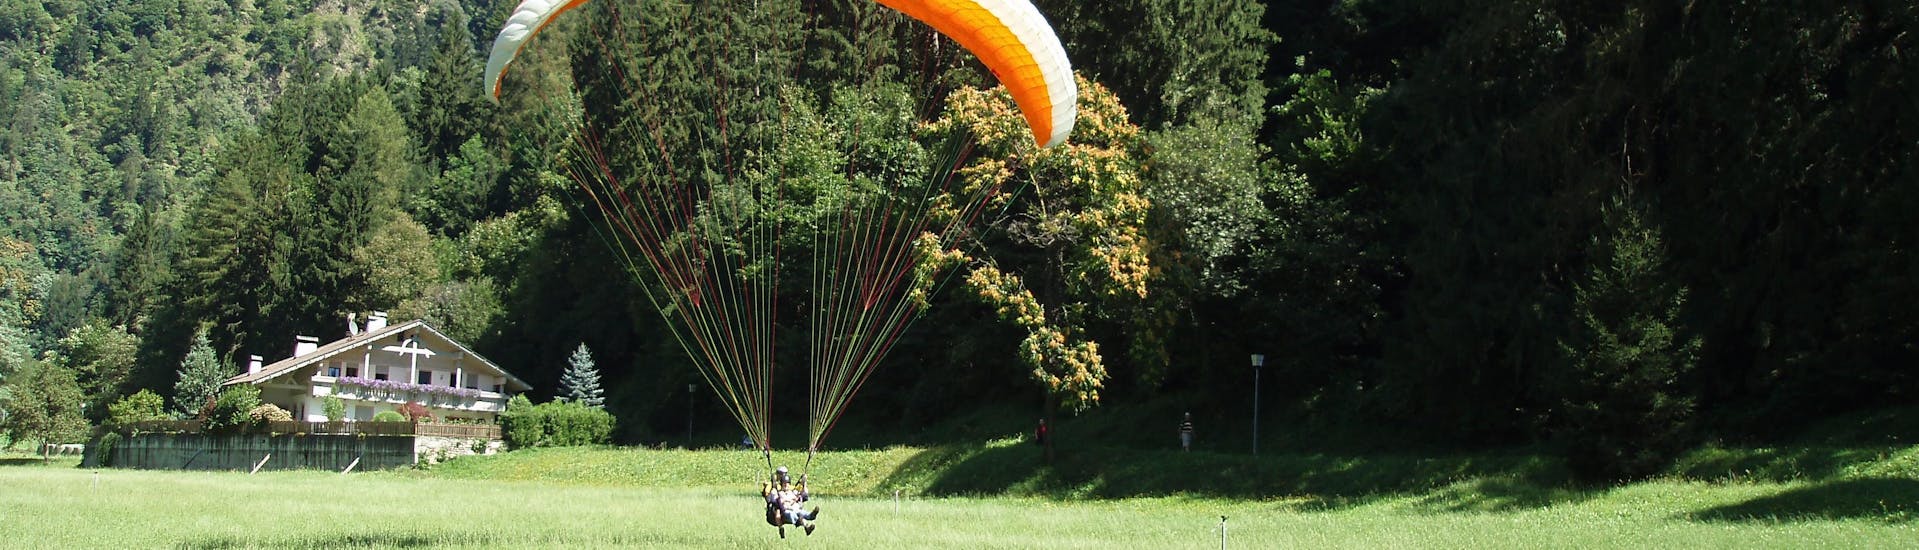 Thermisch tandem paragliding in Saltaus (Saltusio) (vanaf 5 j.) - Hirzer (Punta Cervina).